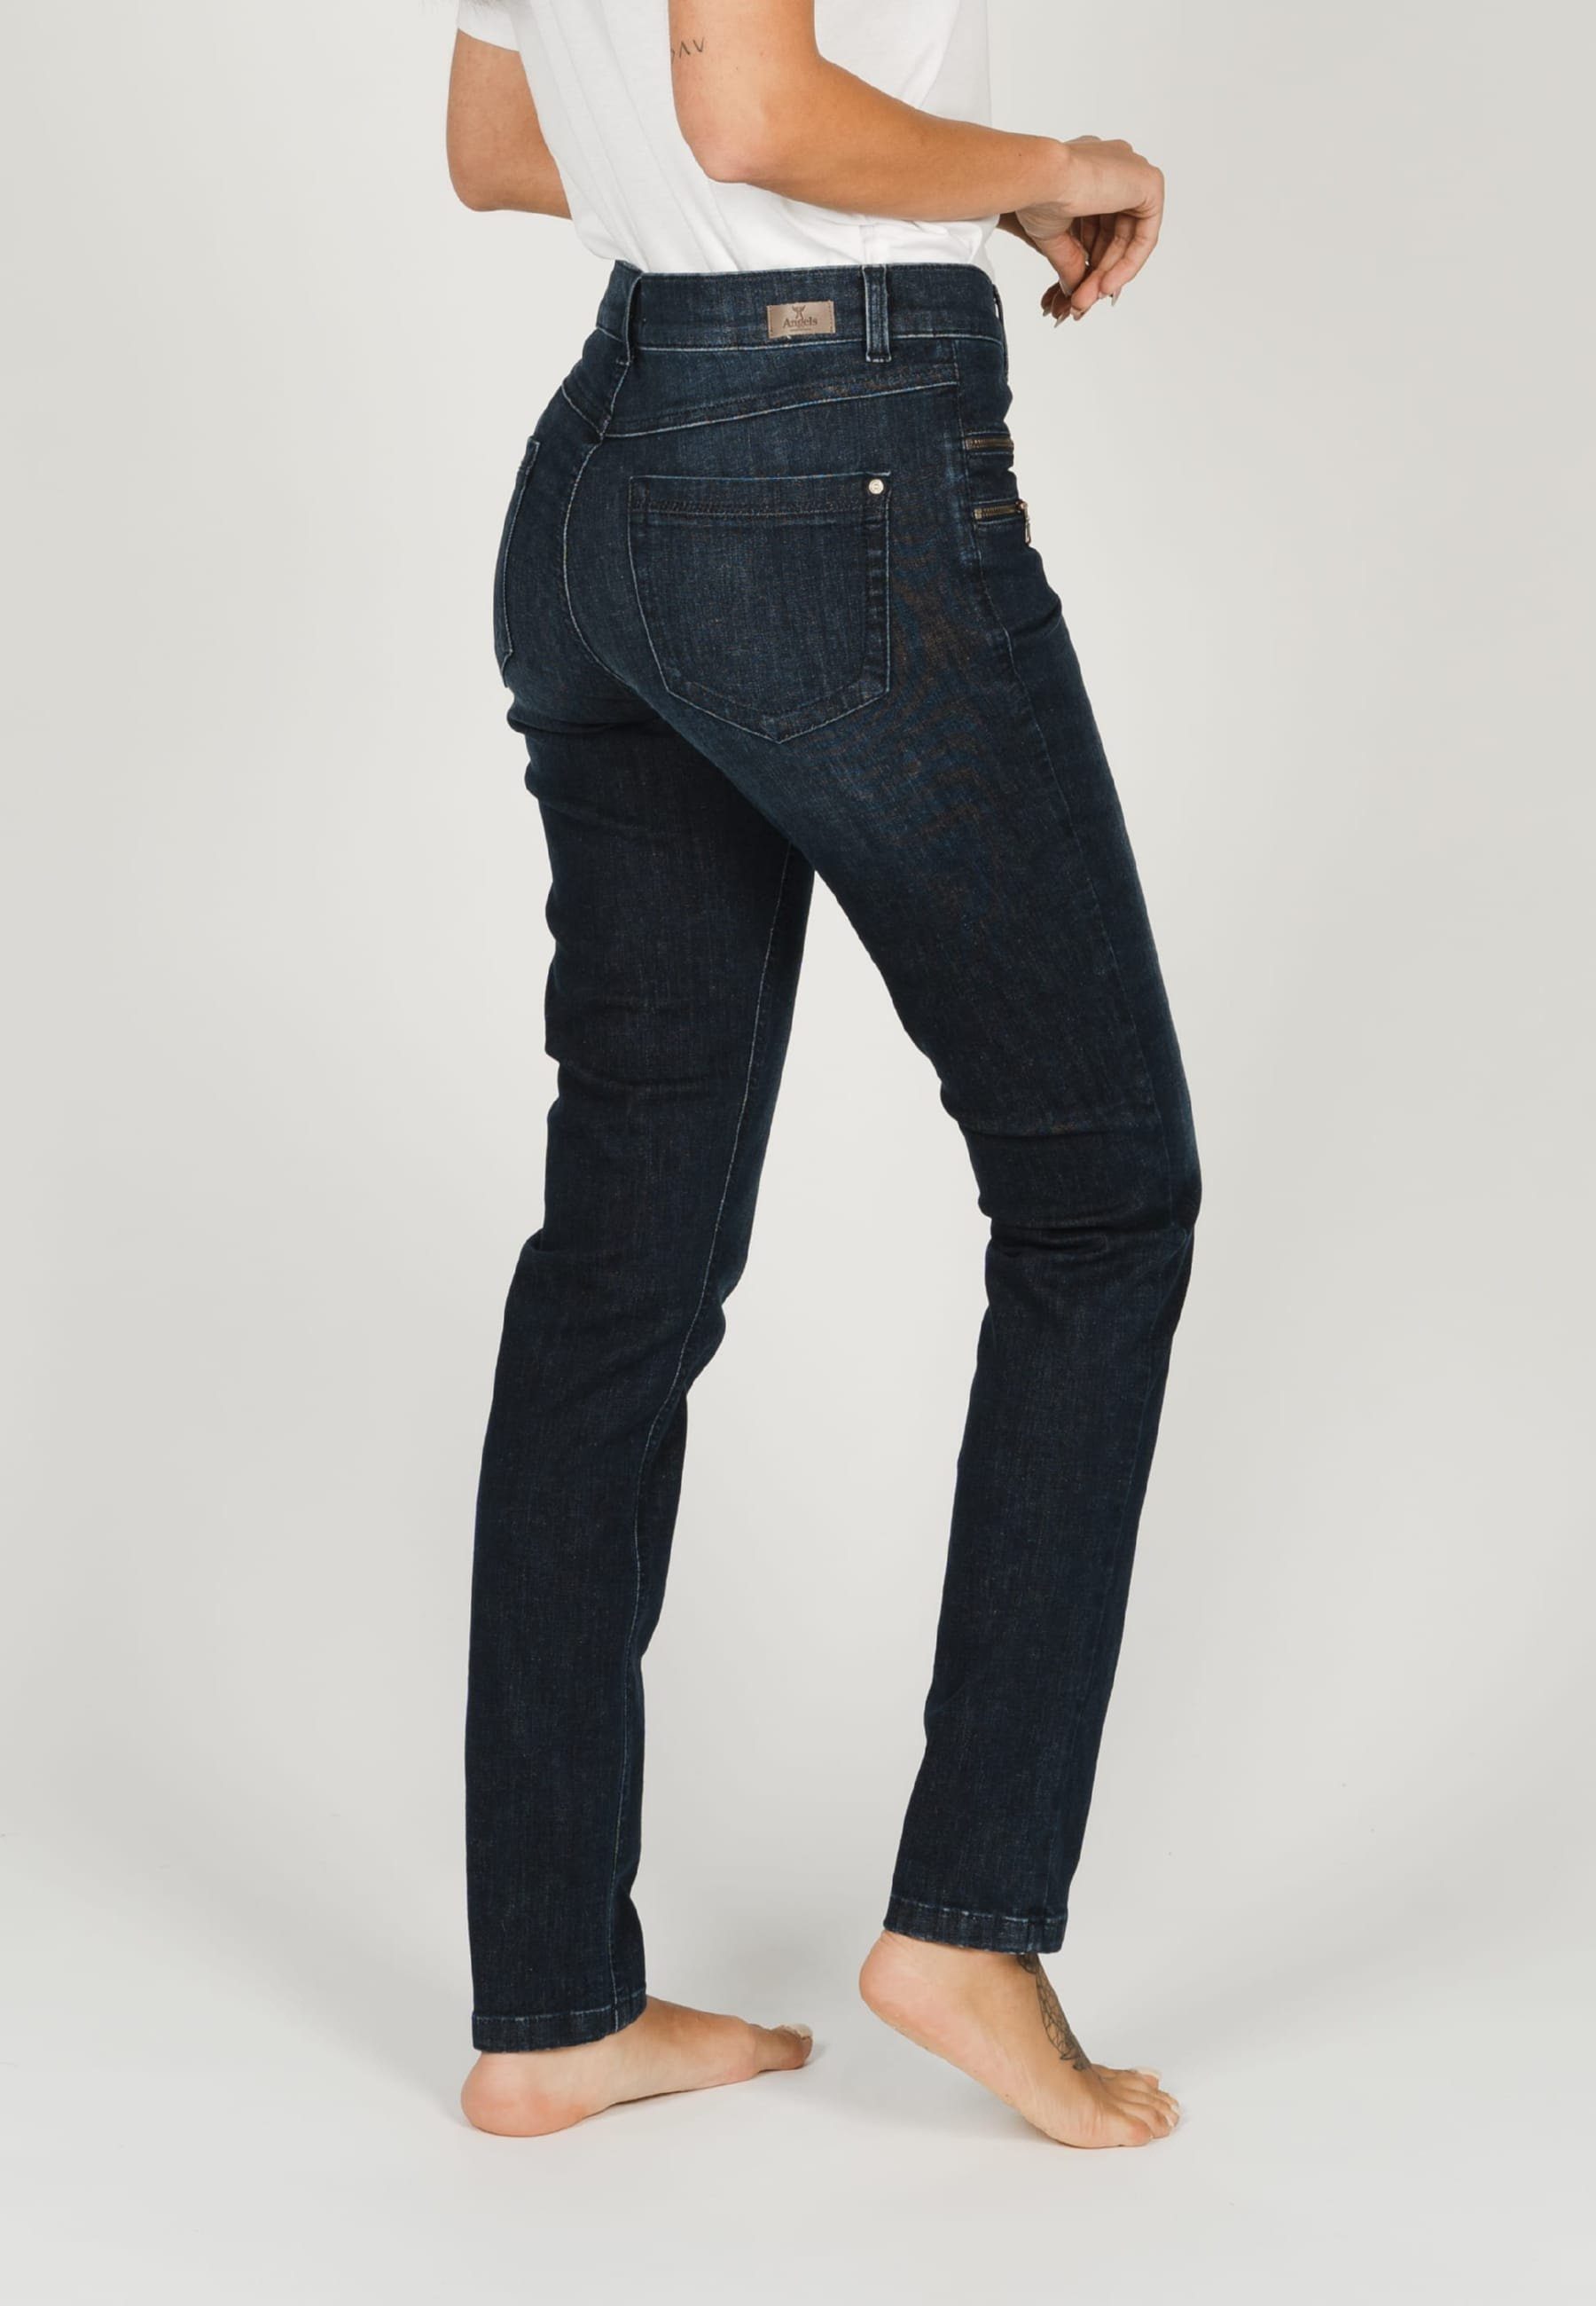 ANGELS Slim-fit-Jeans Jeans Malu Zip mit mit indigo Label-Applikationen Zierreißverschlüssen